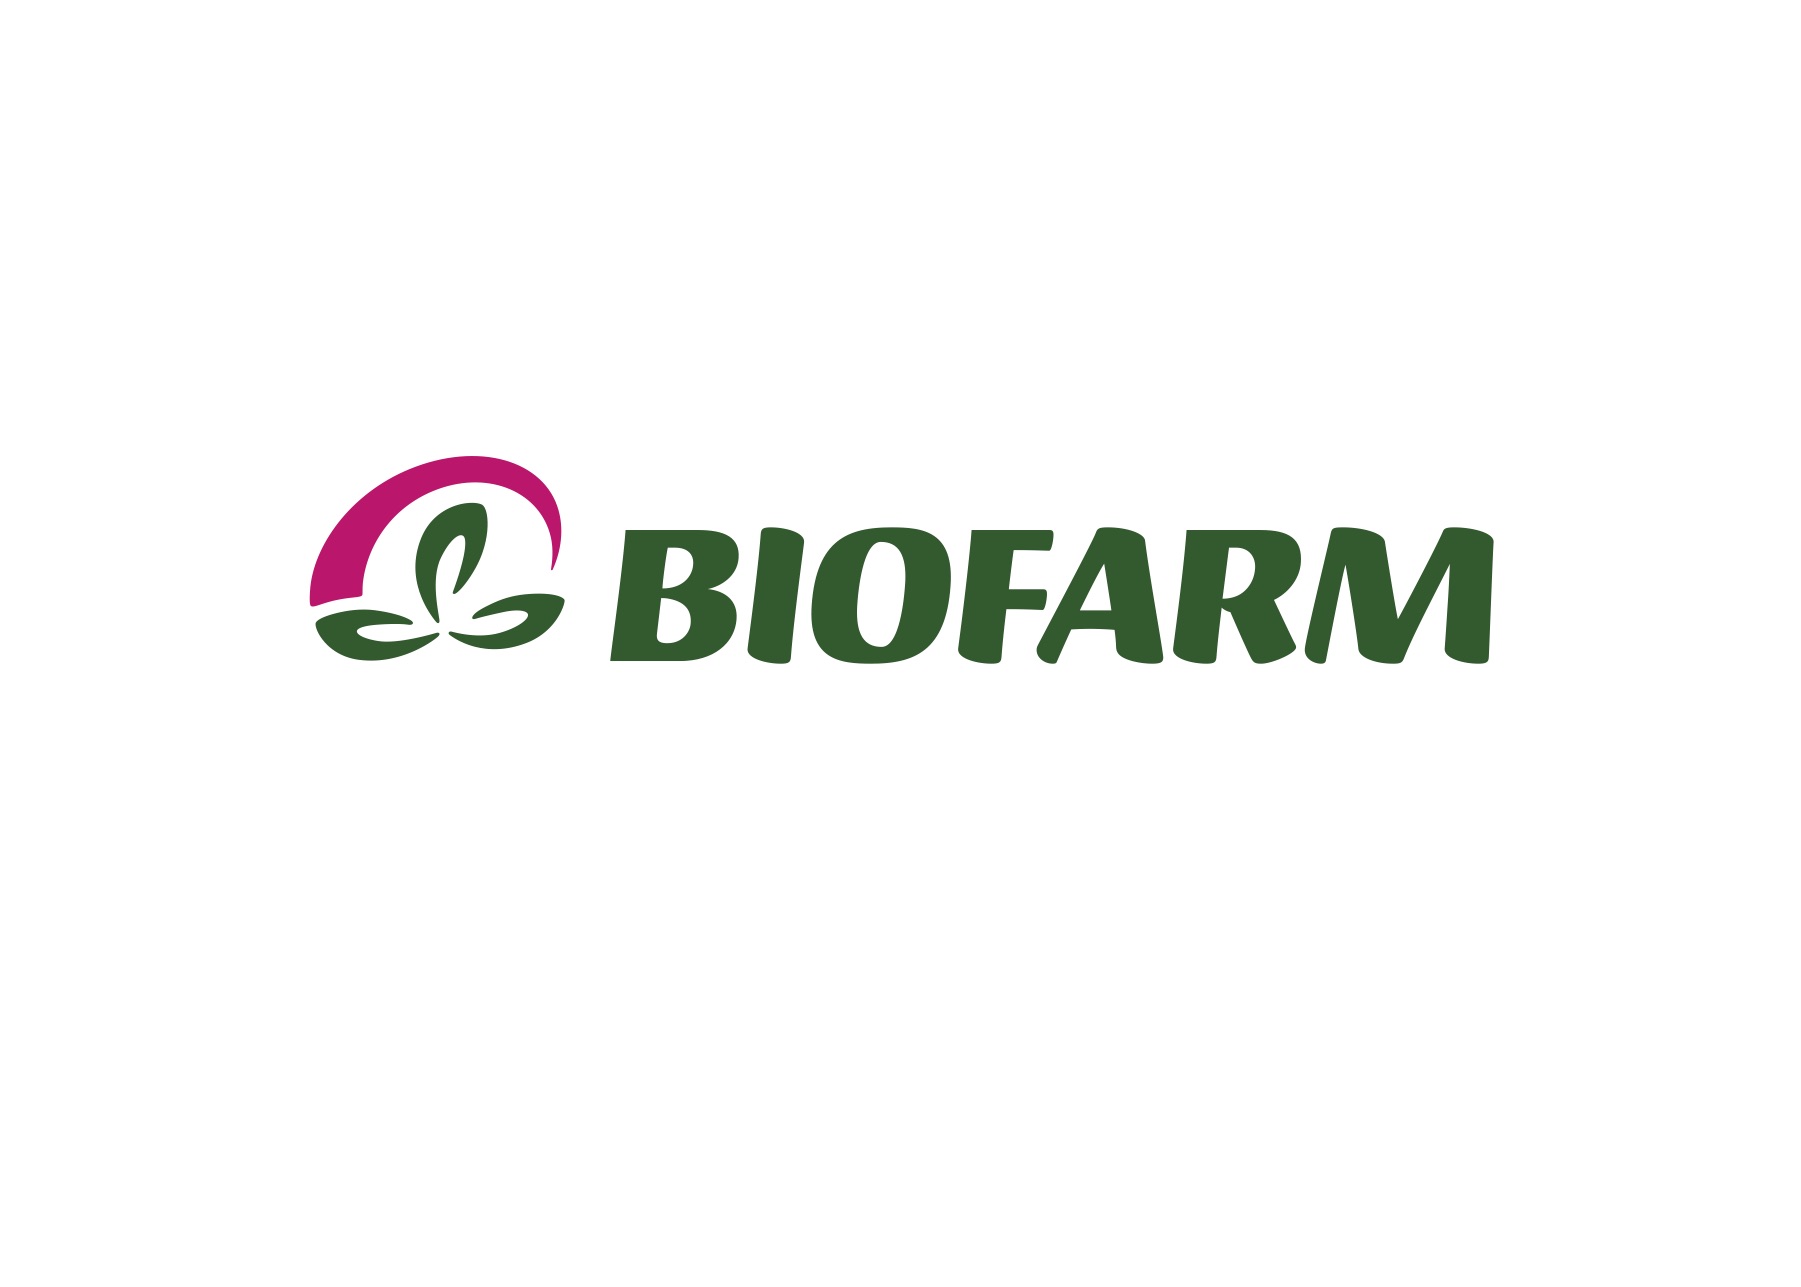  Biofarm logo 2010 kopio 2